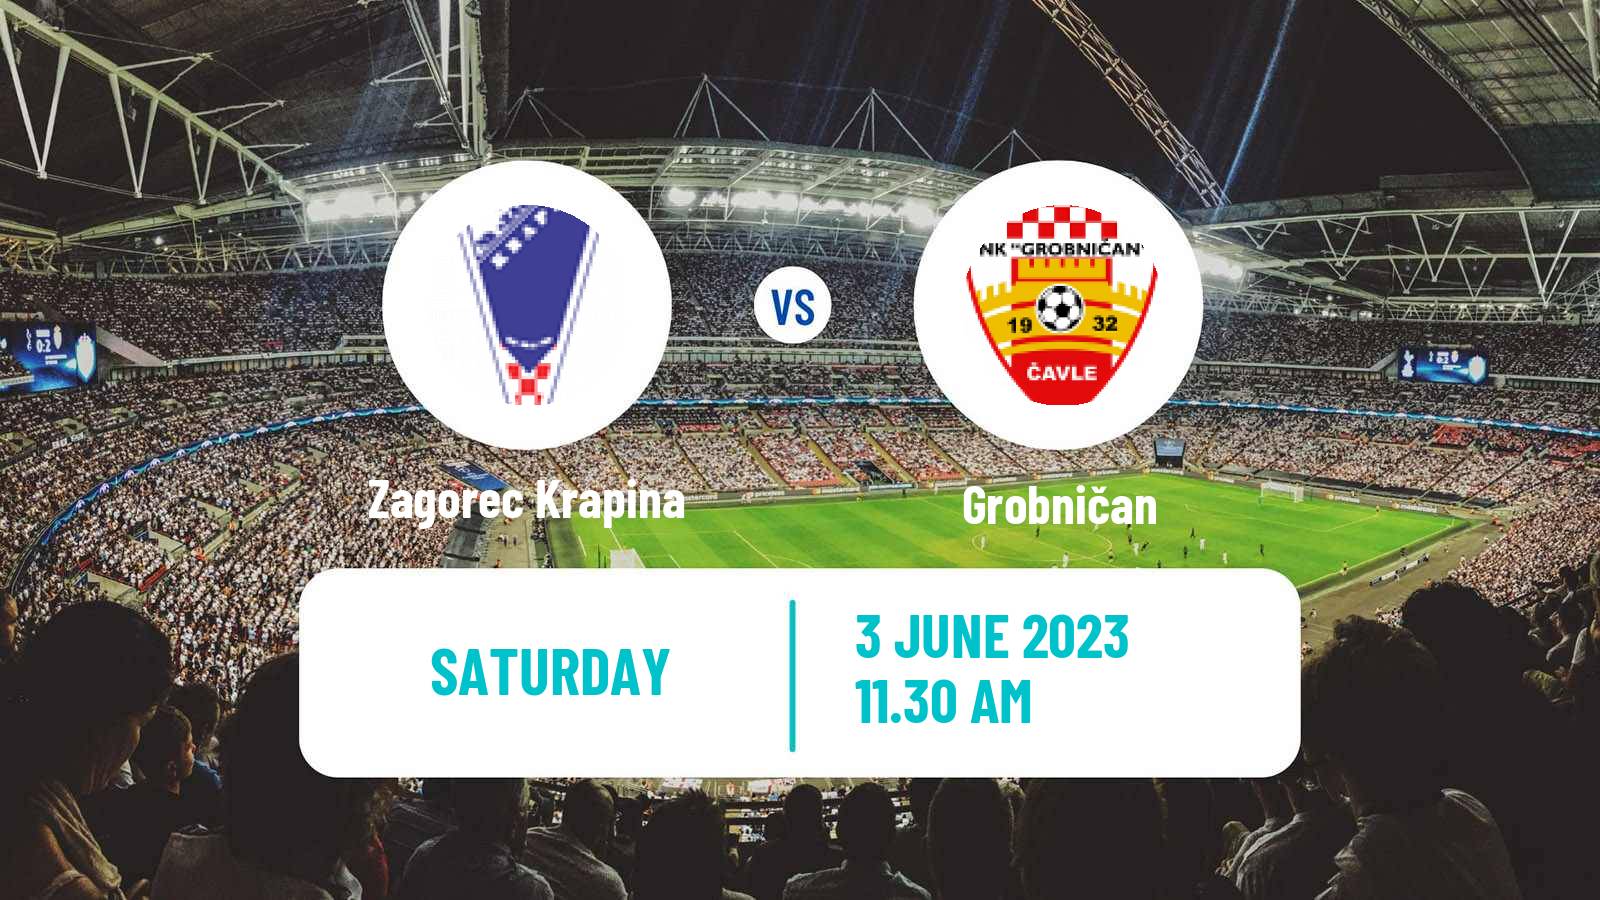 Soccer Croatian Druga NL Zagorec Krapina - Grobničan